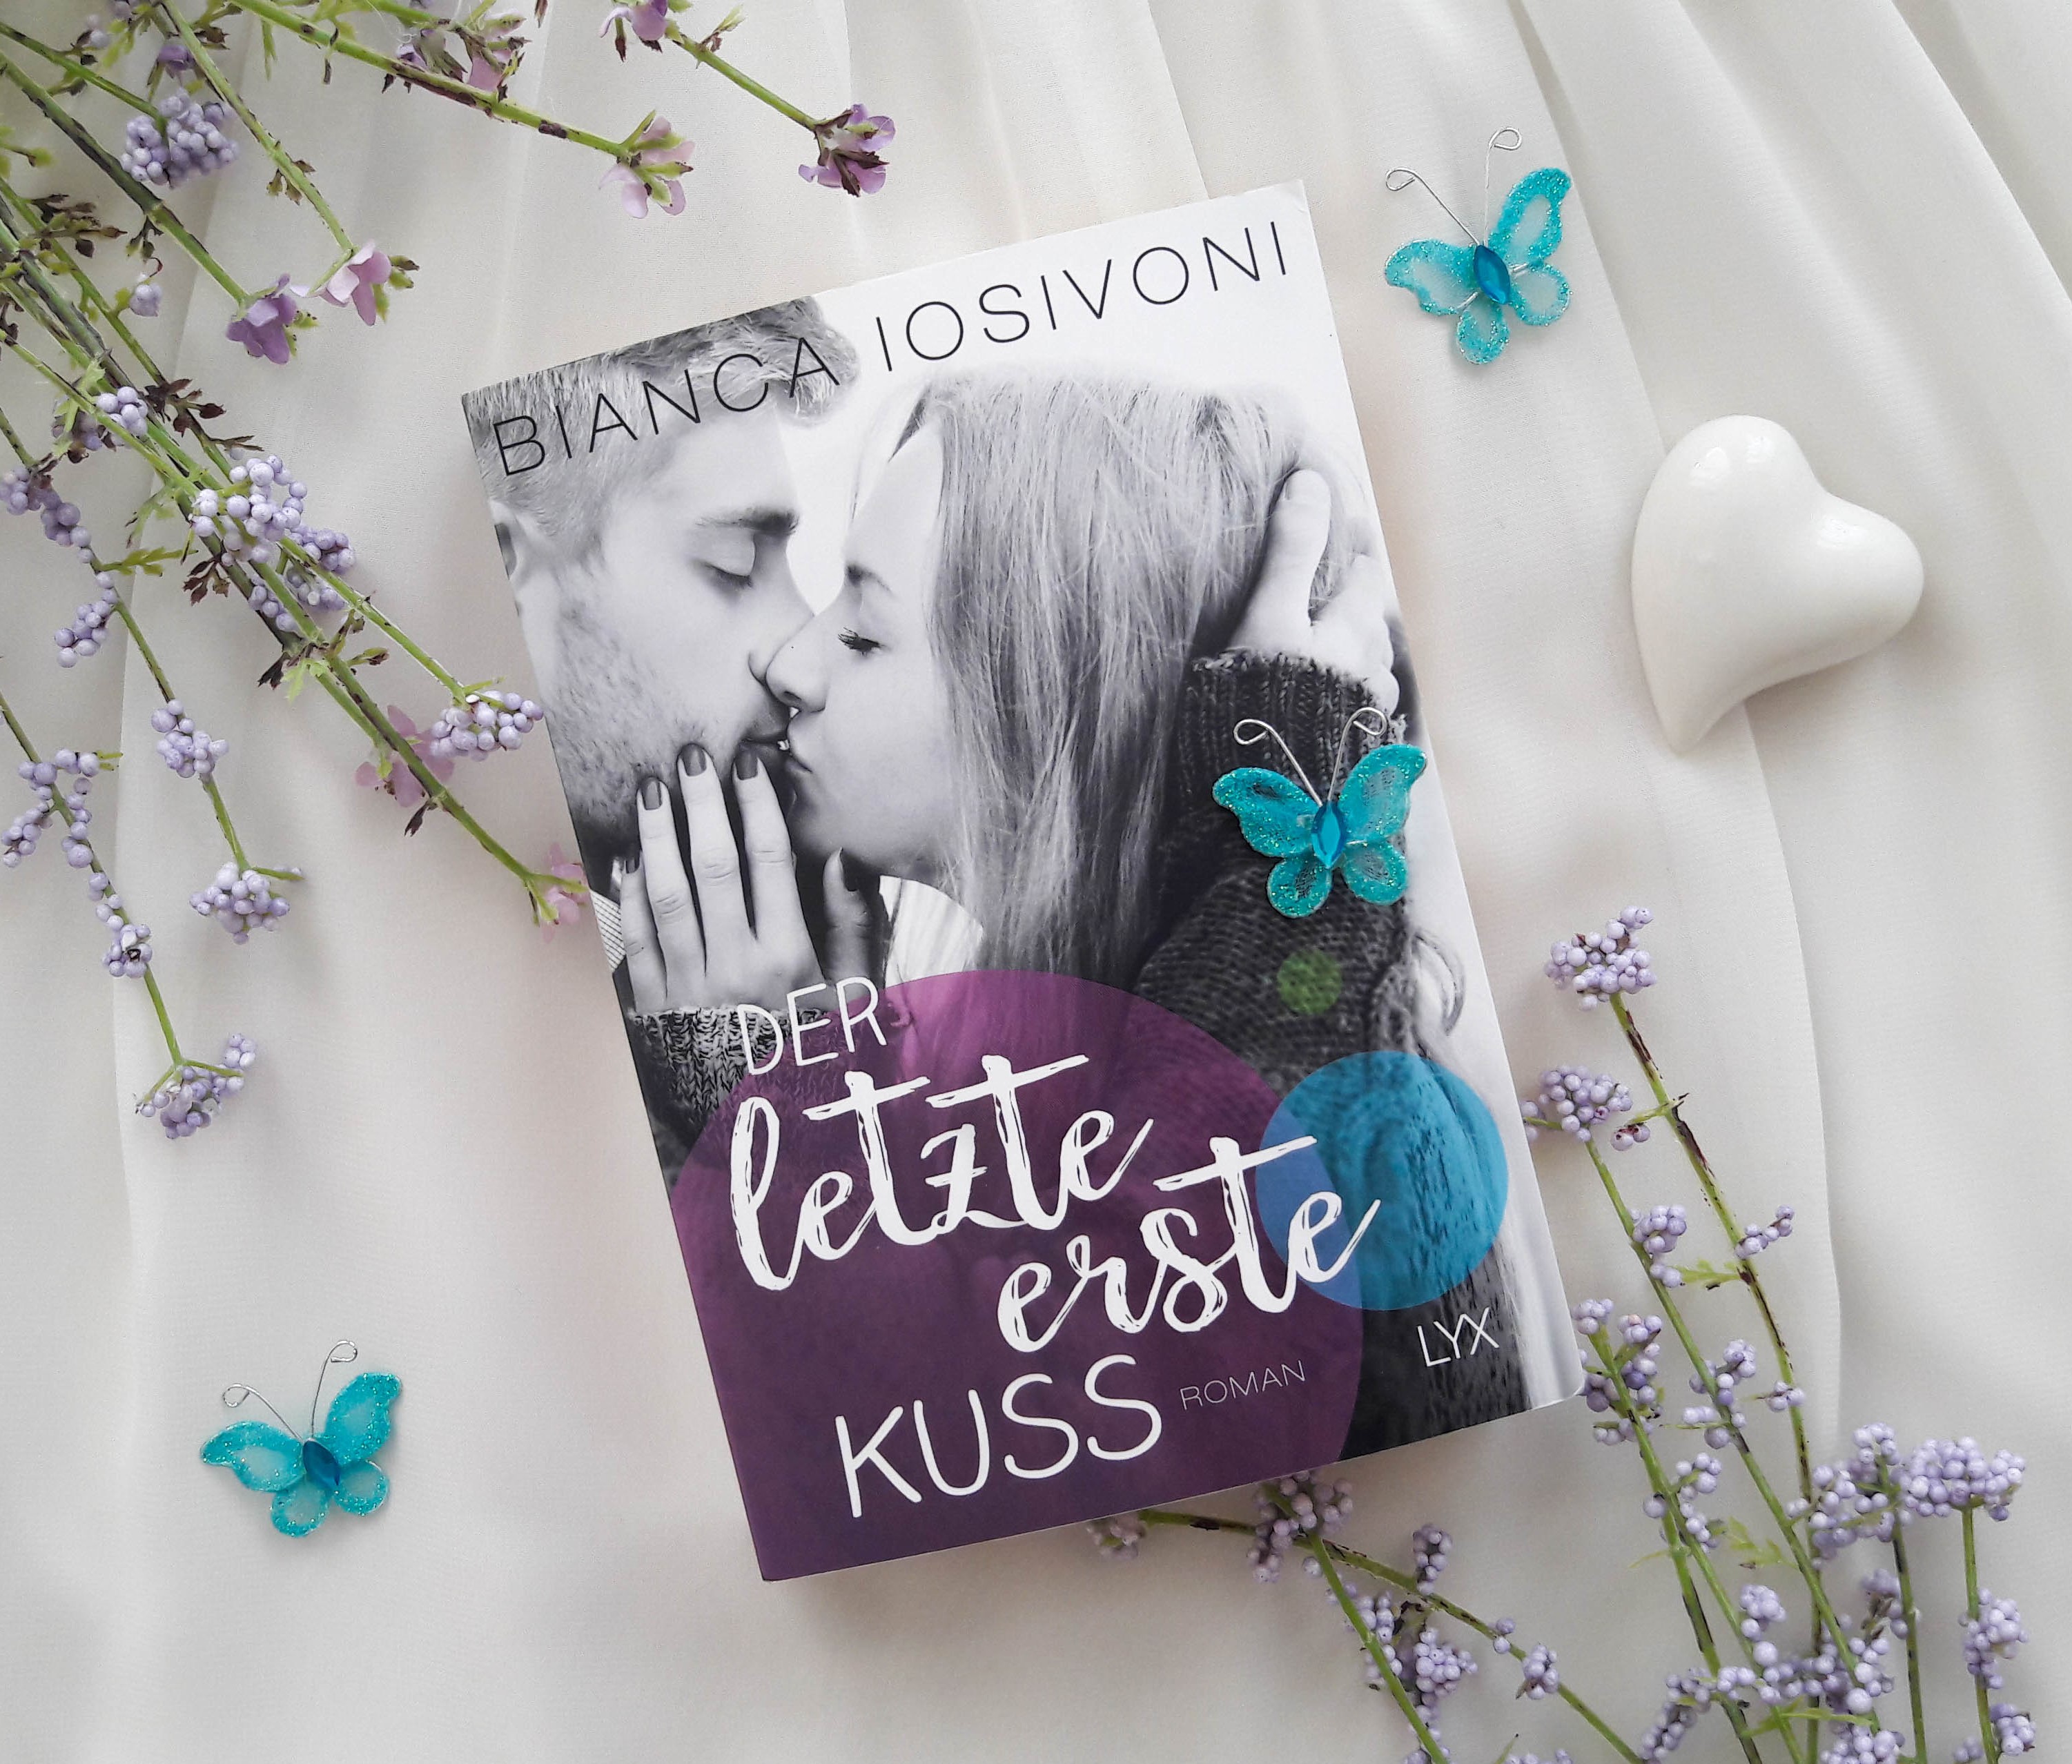 Der letzte erste Kuss – Bianca Iosivoni graphic